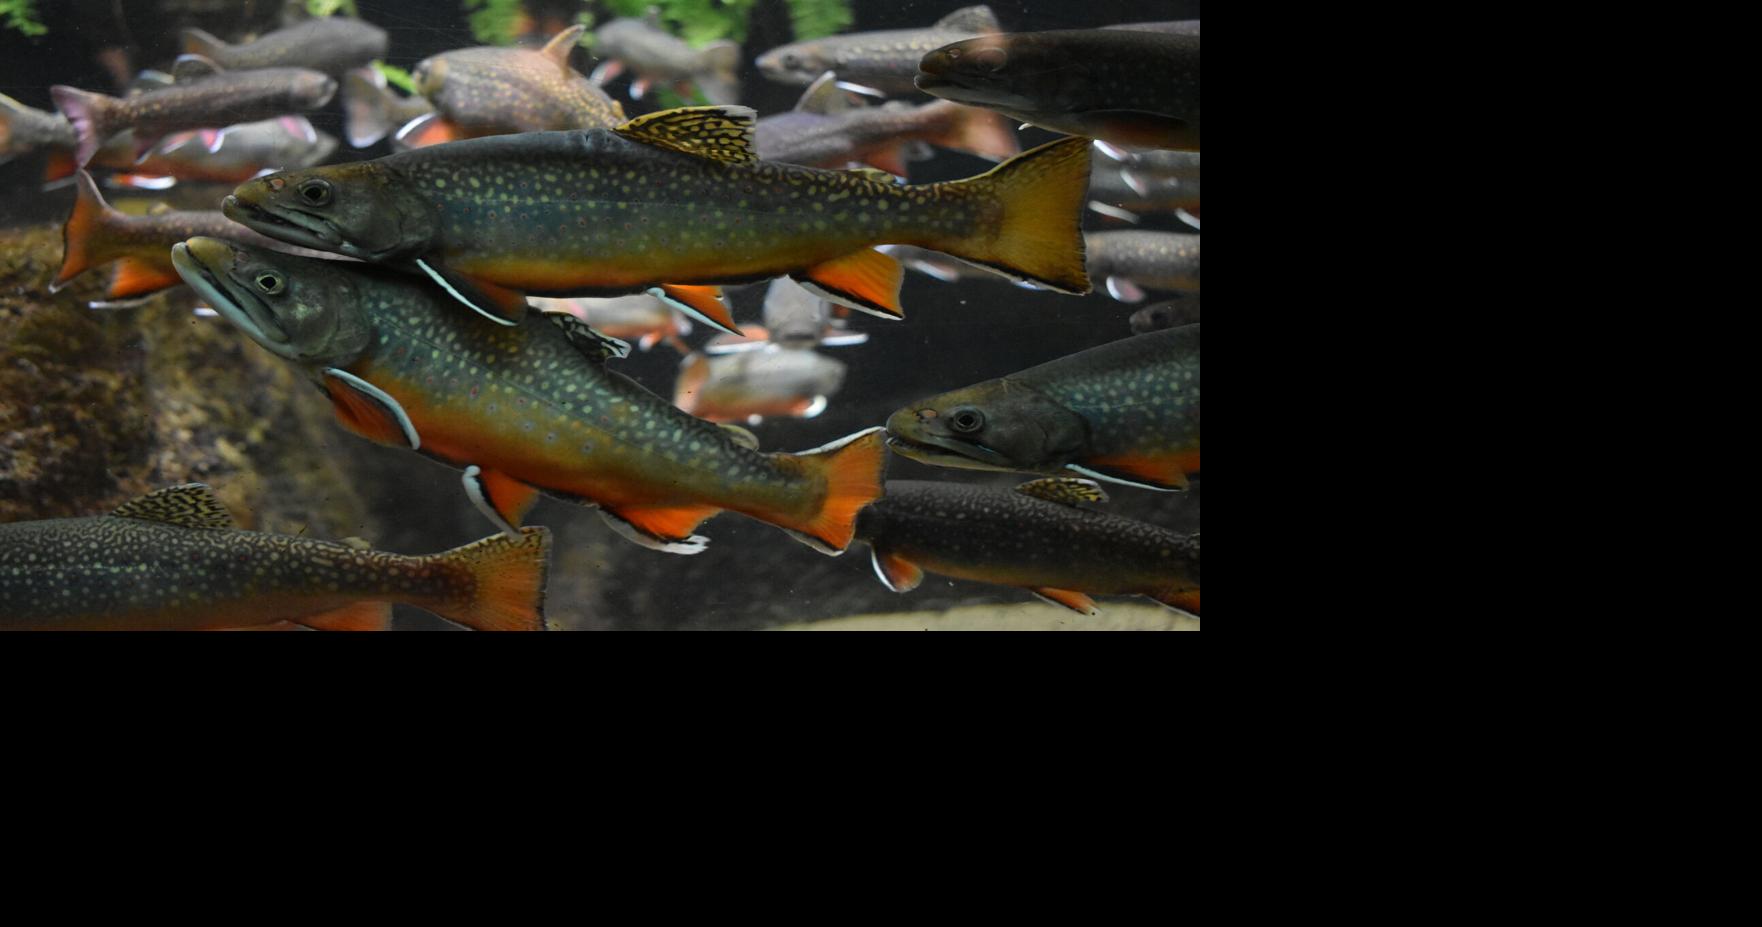 WORLD OUTDOORS Illinois trout season opens